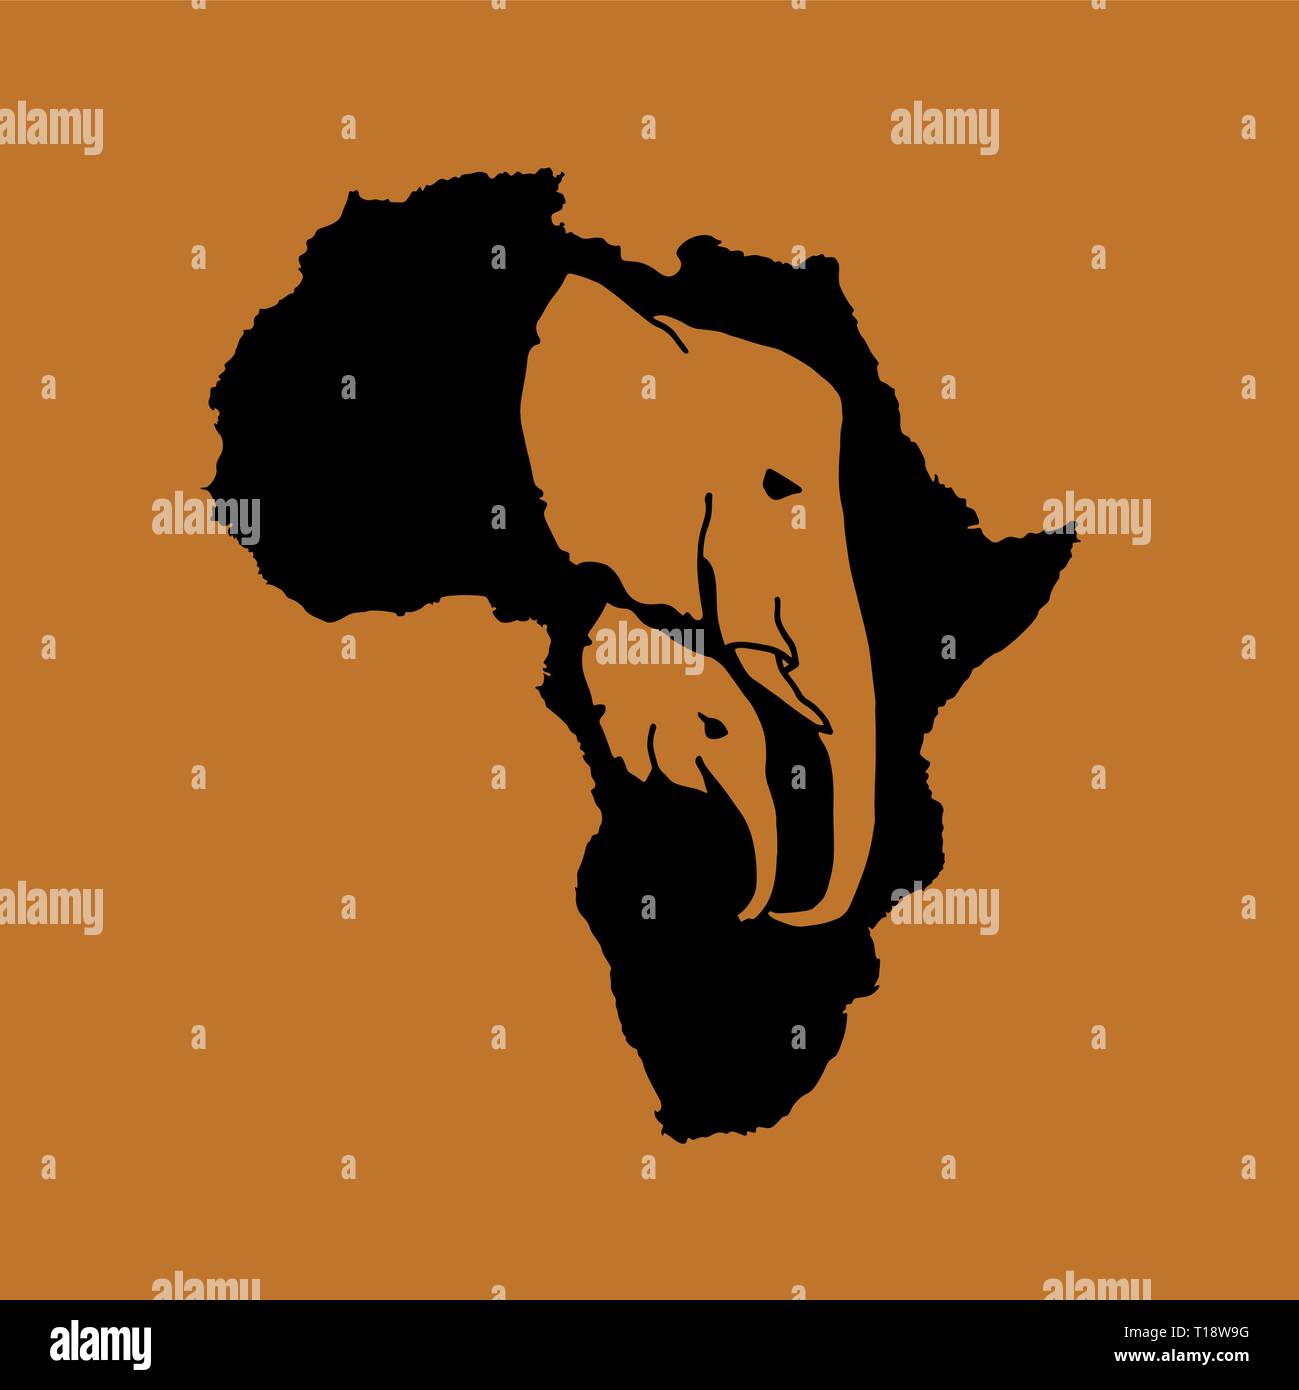 Silhouette vecteur d'Afrique noire avec deux brown elephant head silhouette à l'intérieur sur fond brun. Mère et bébé éléphant logo tête Illustration de Vecteur